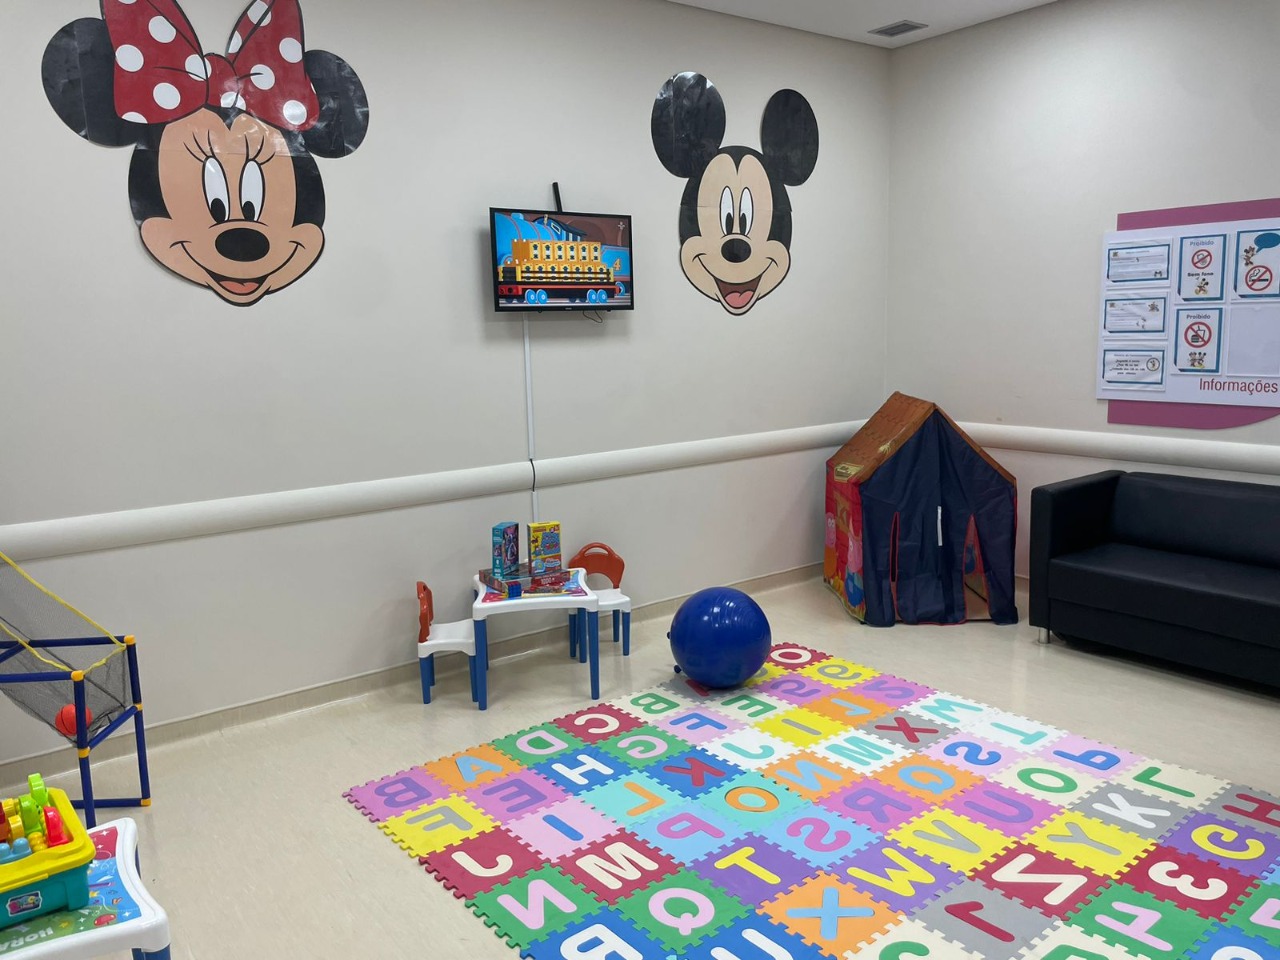 Na imagem há dois personagens de desenho colados na parede, um tapete do alfabeto e vários brinquedos ao redor da sala.